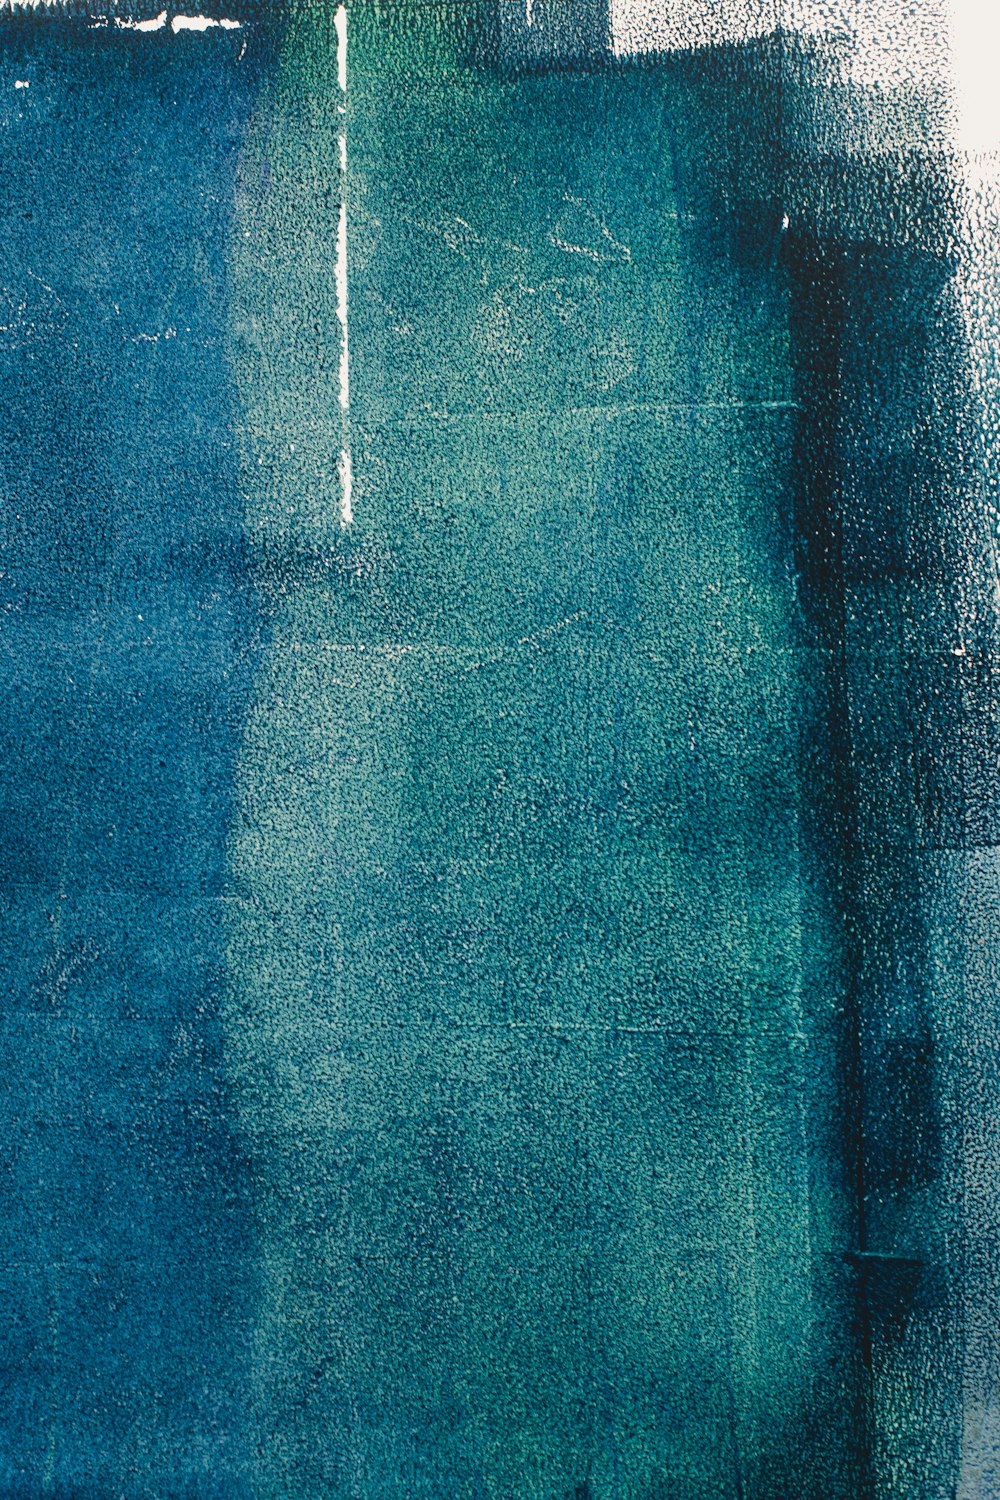 têxtil azul com gotículas de água